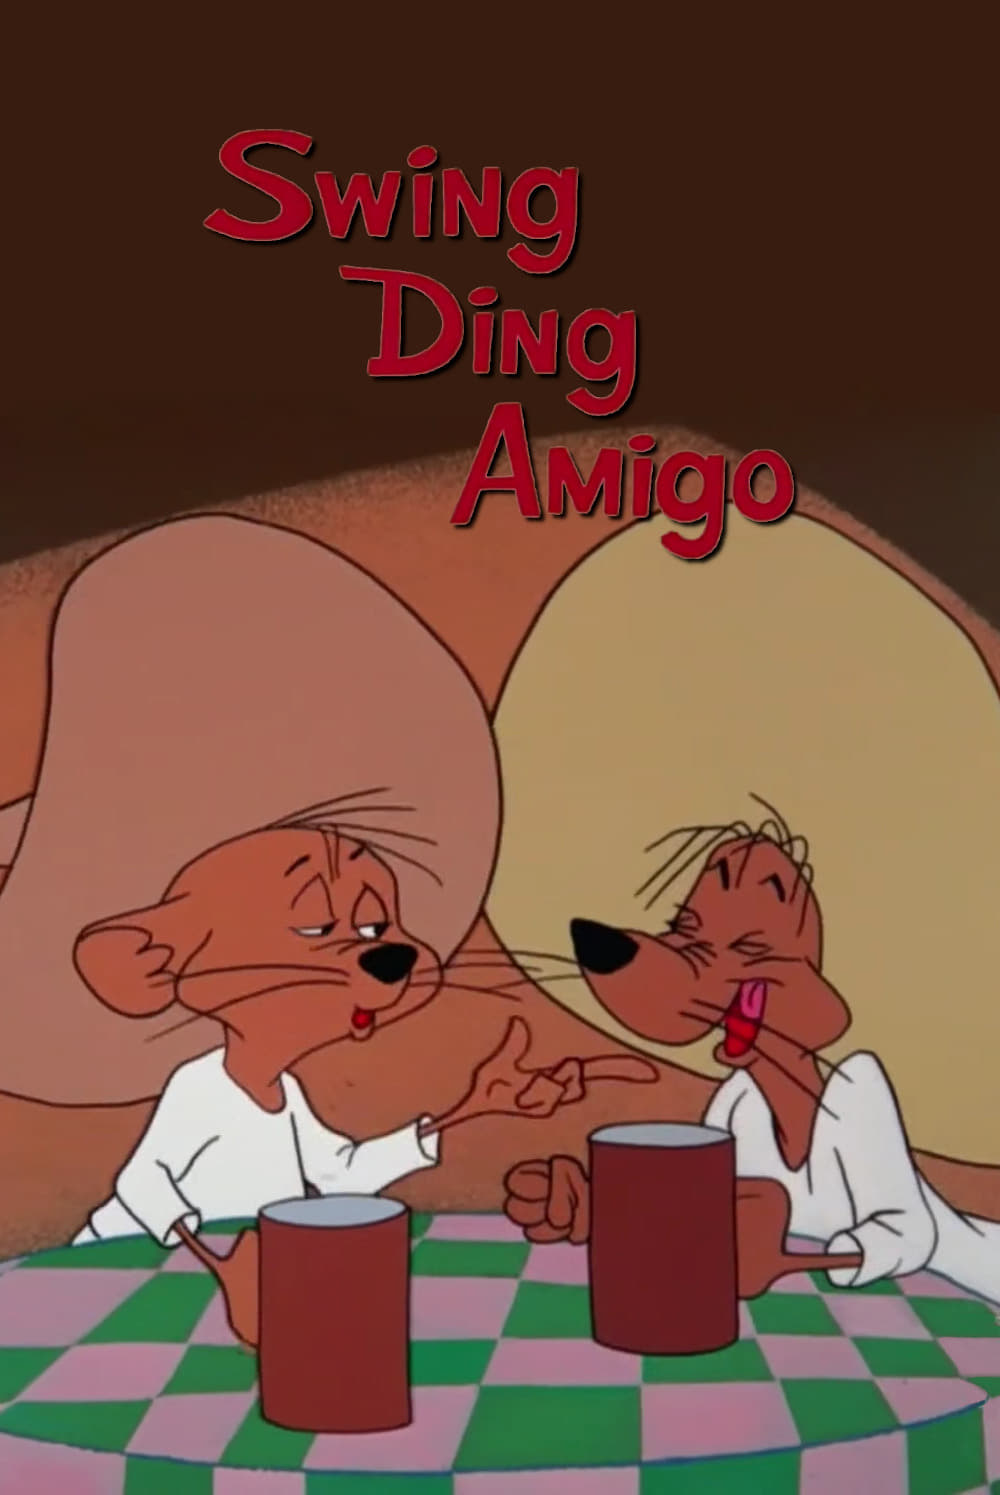 Swing Ding Amigo (1966)